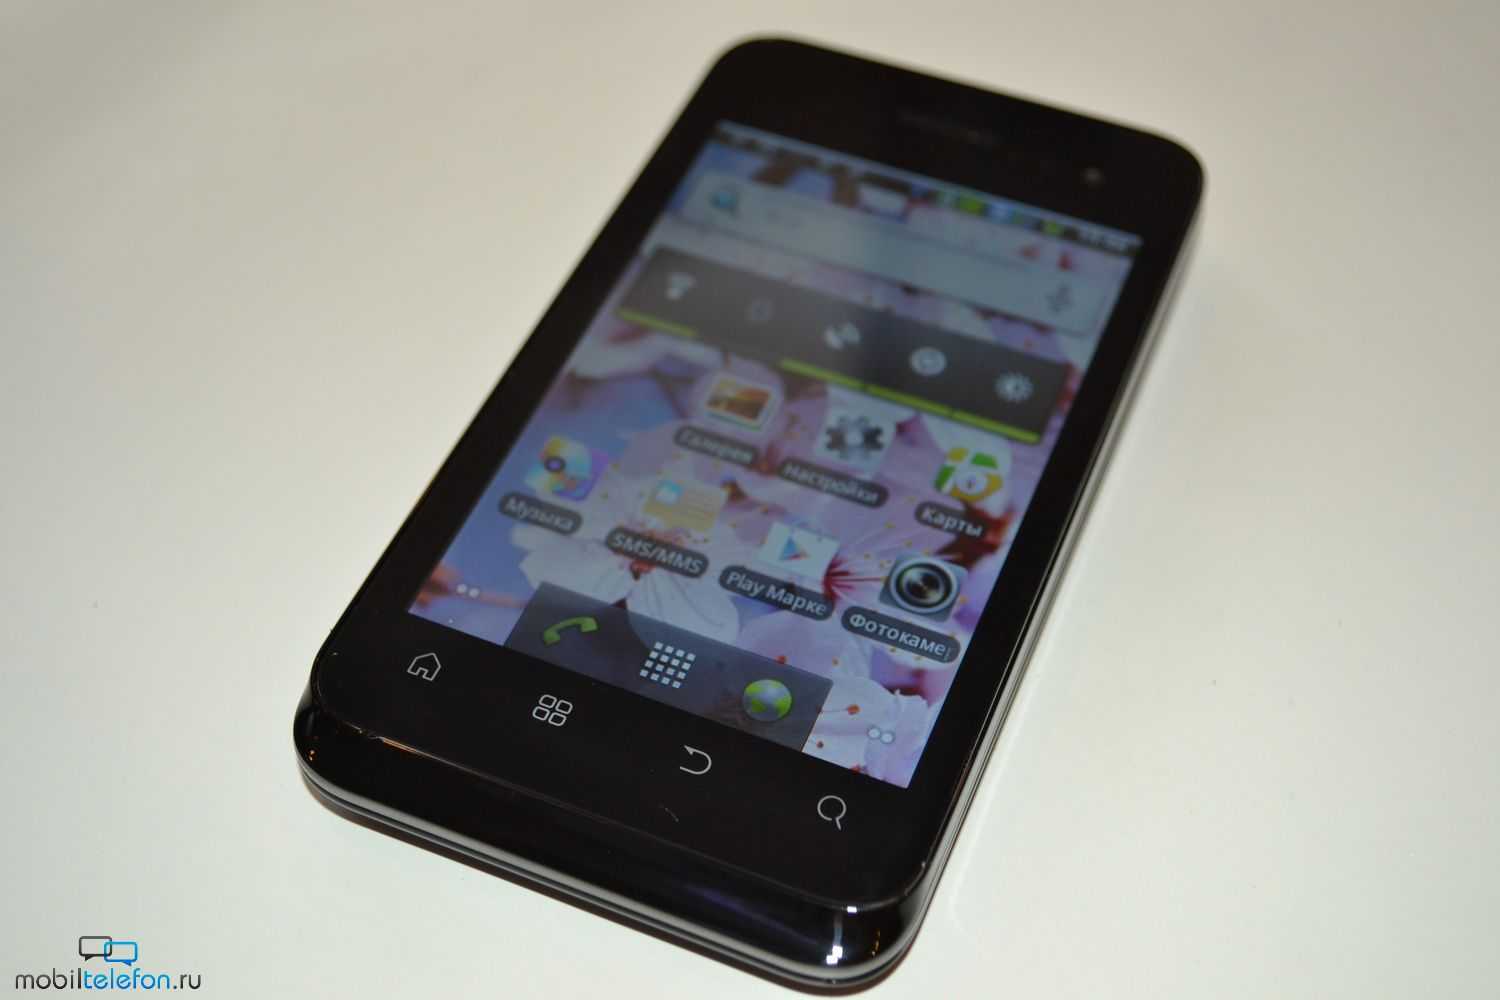 Мобильный телефон Fly IQ255 Pride - подробные характеристики обзоры видео фото Цены в интернет-магазинах где можно купить мобильный телефон Fly IQ255 Pride